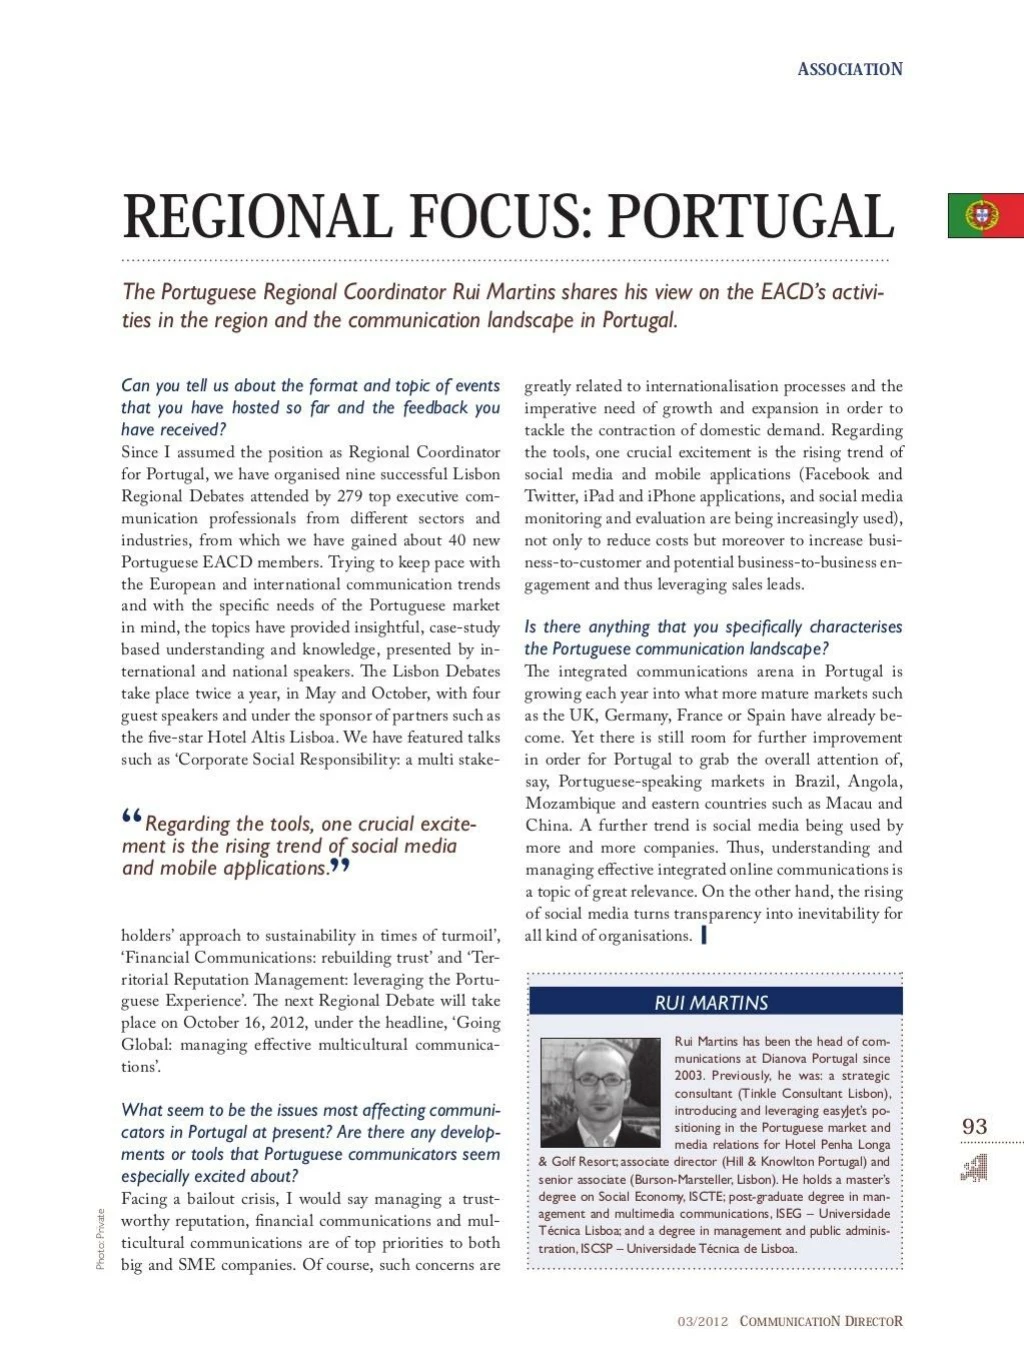 rui martins regional focus portugal communication directormagazine 2012